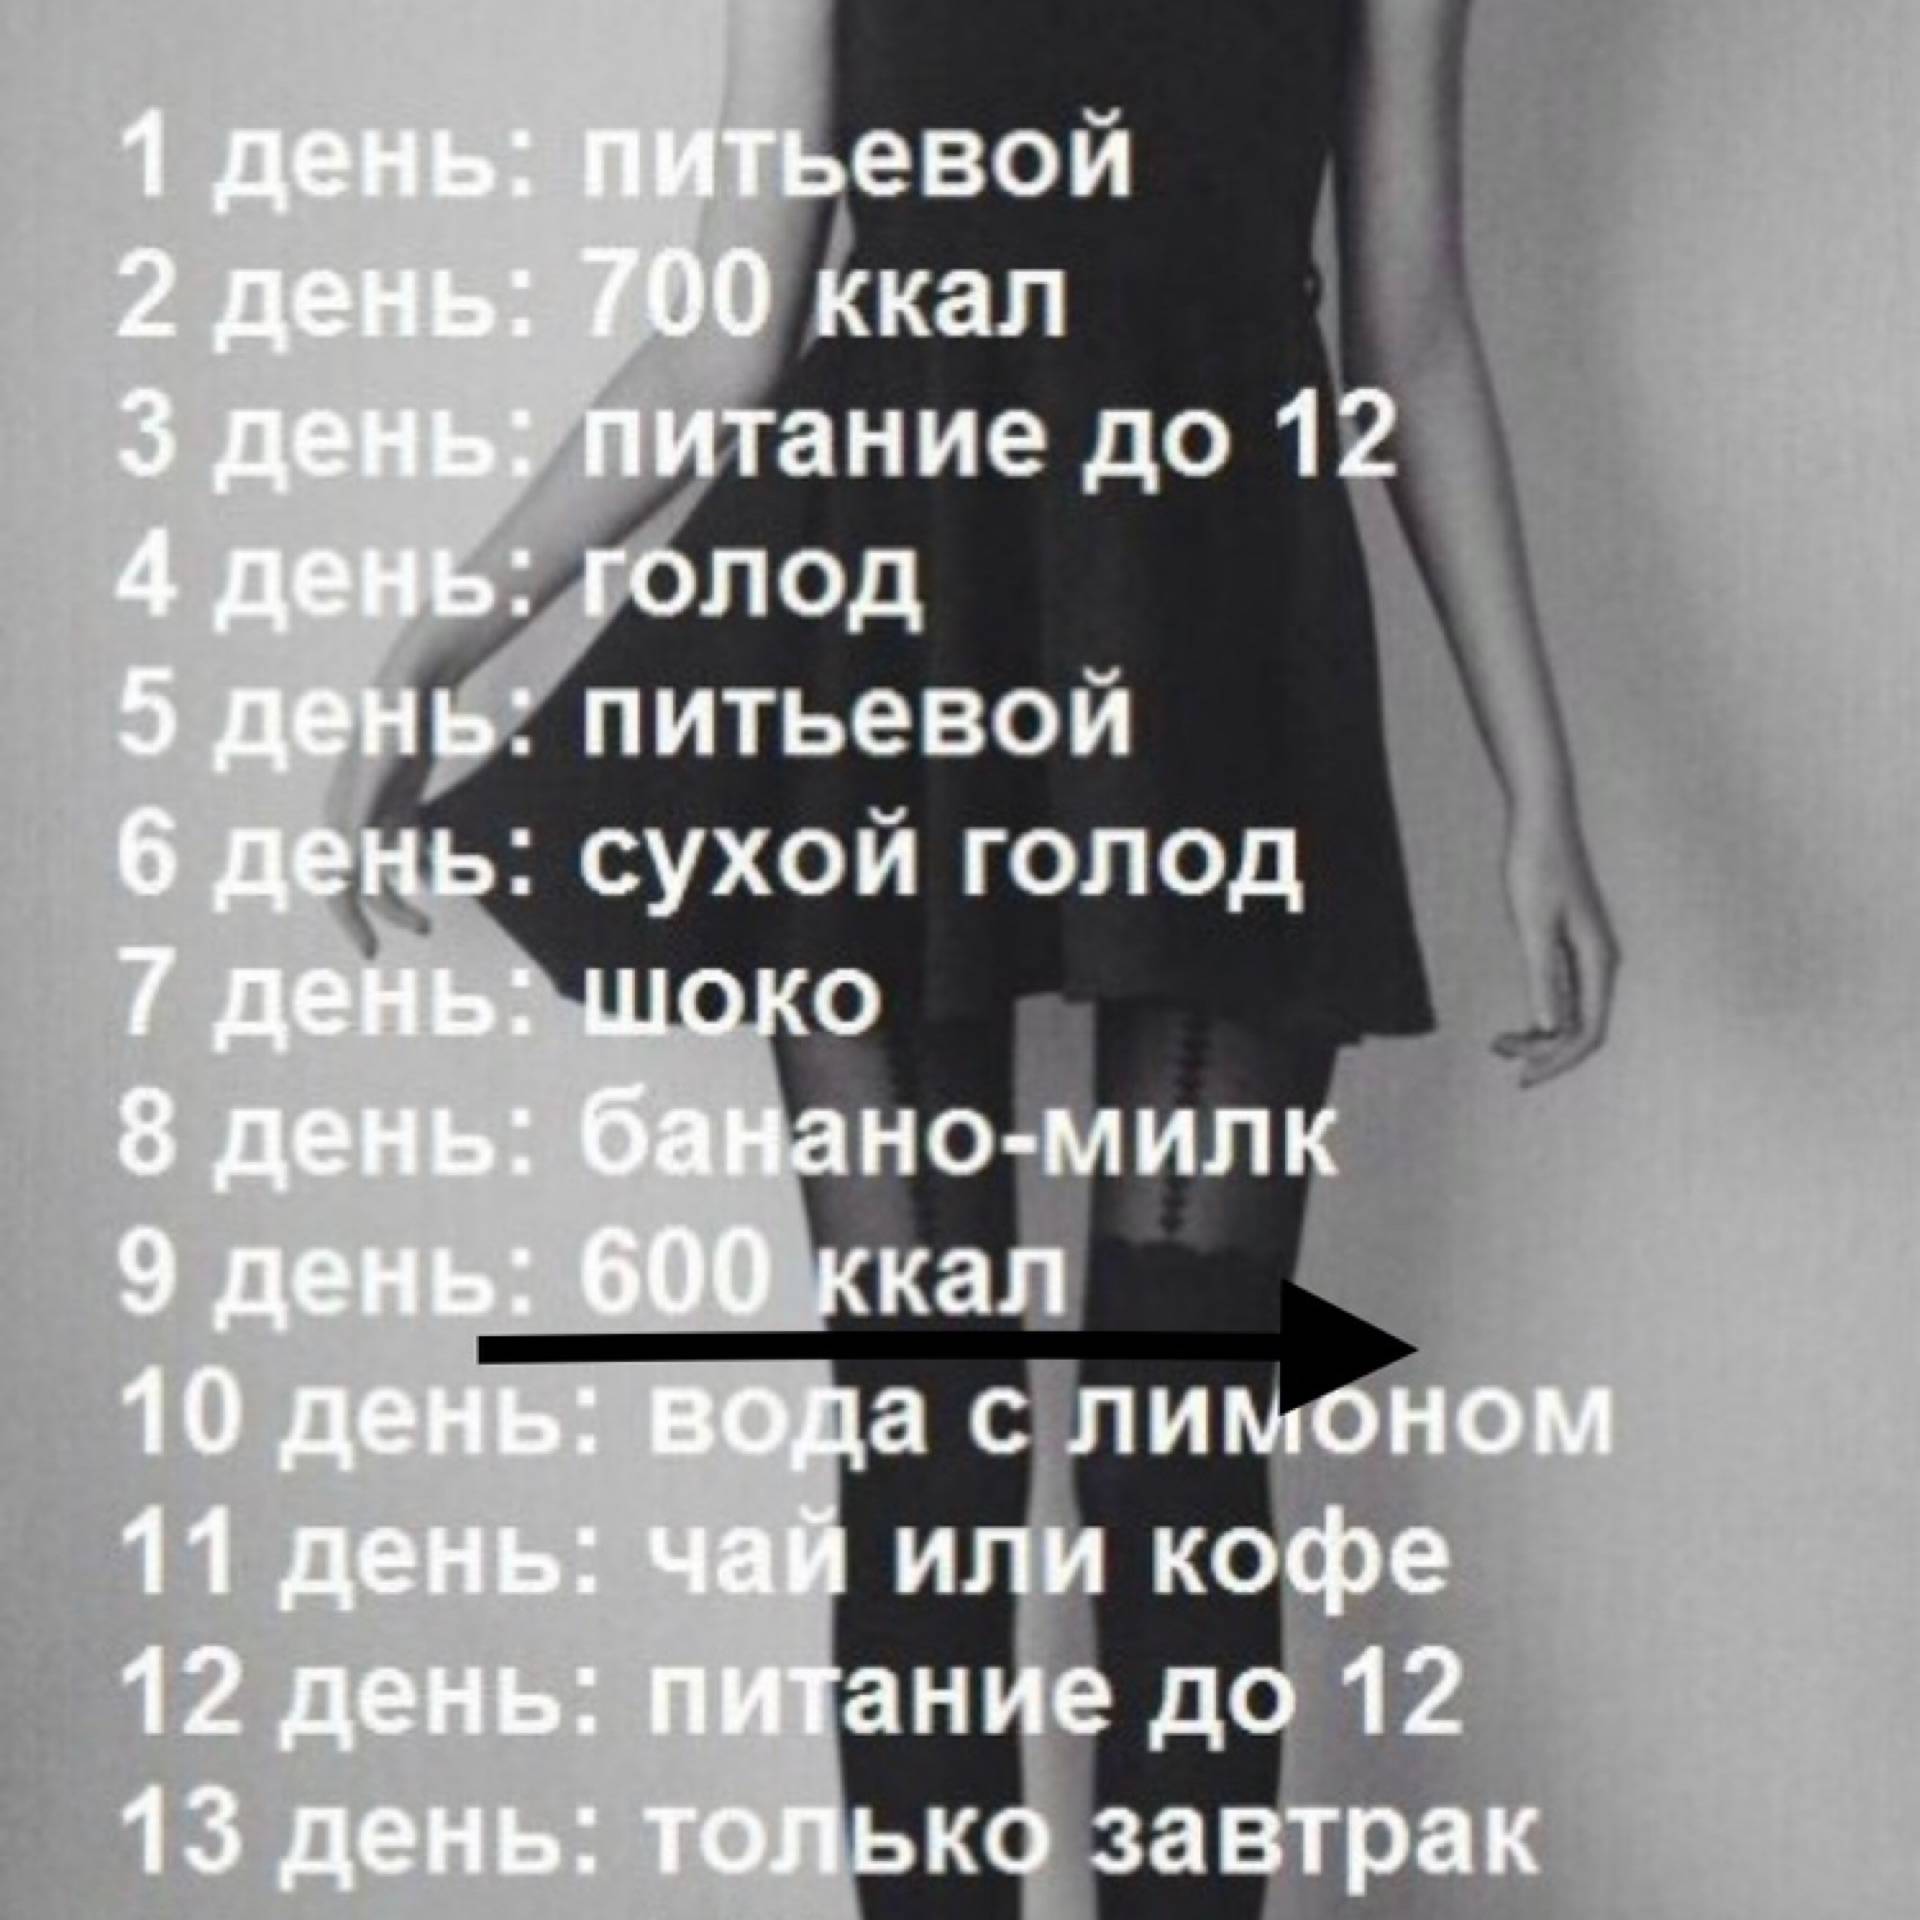 Если не есть после 6 на сколько можно похудеть за месяц - реально ли сбросить вес за неделю, если не кушать после шести | balproton.ru